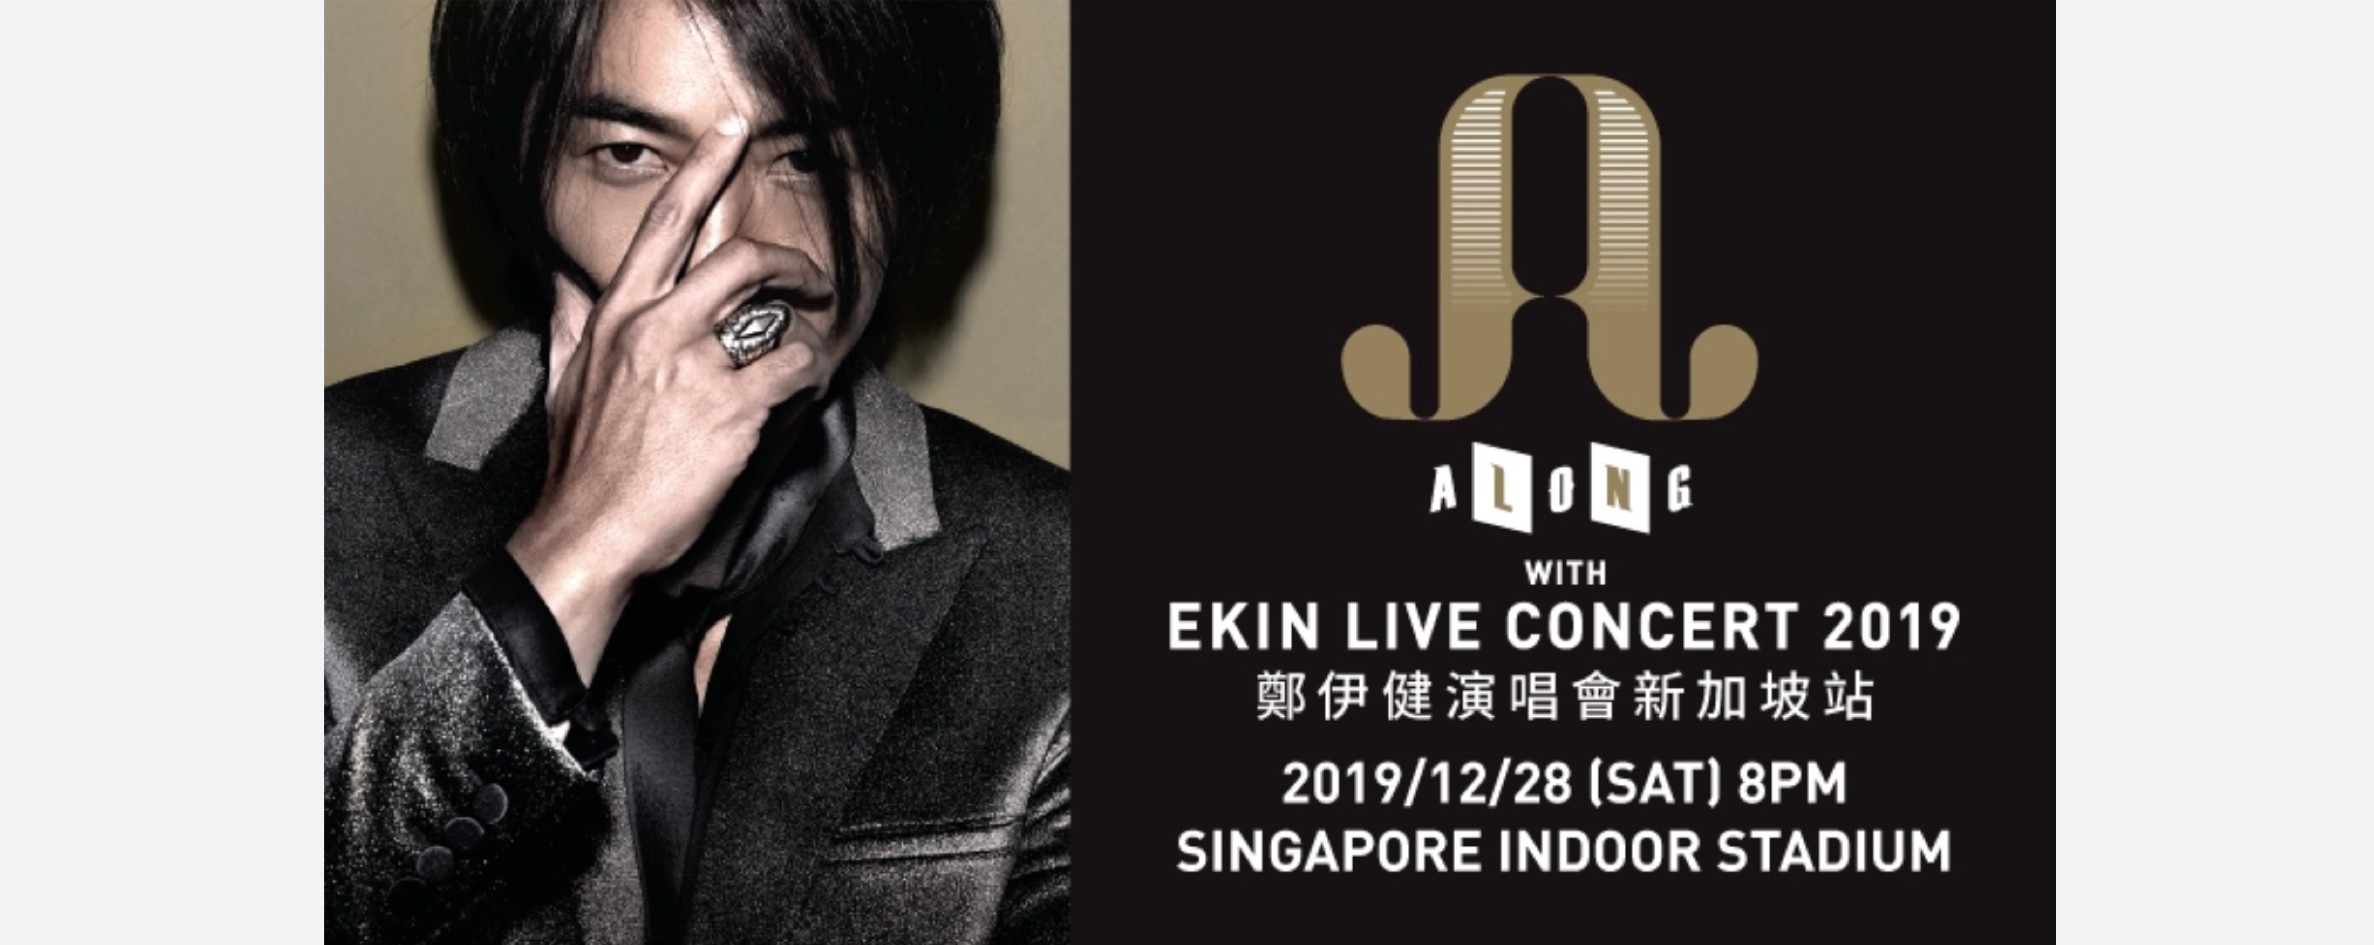 Along With Ekin Live Concert 2019 郑伊健演唱会 - 新加坡站